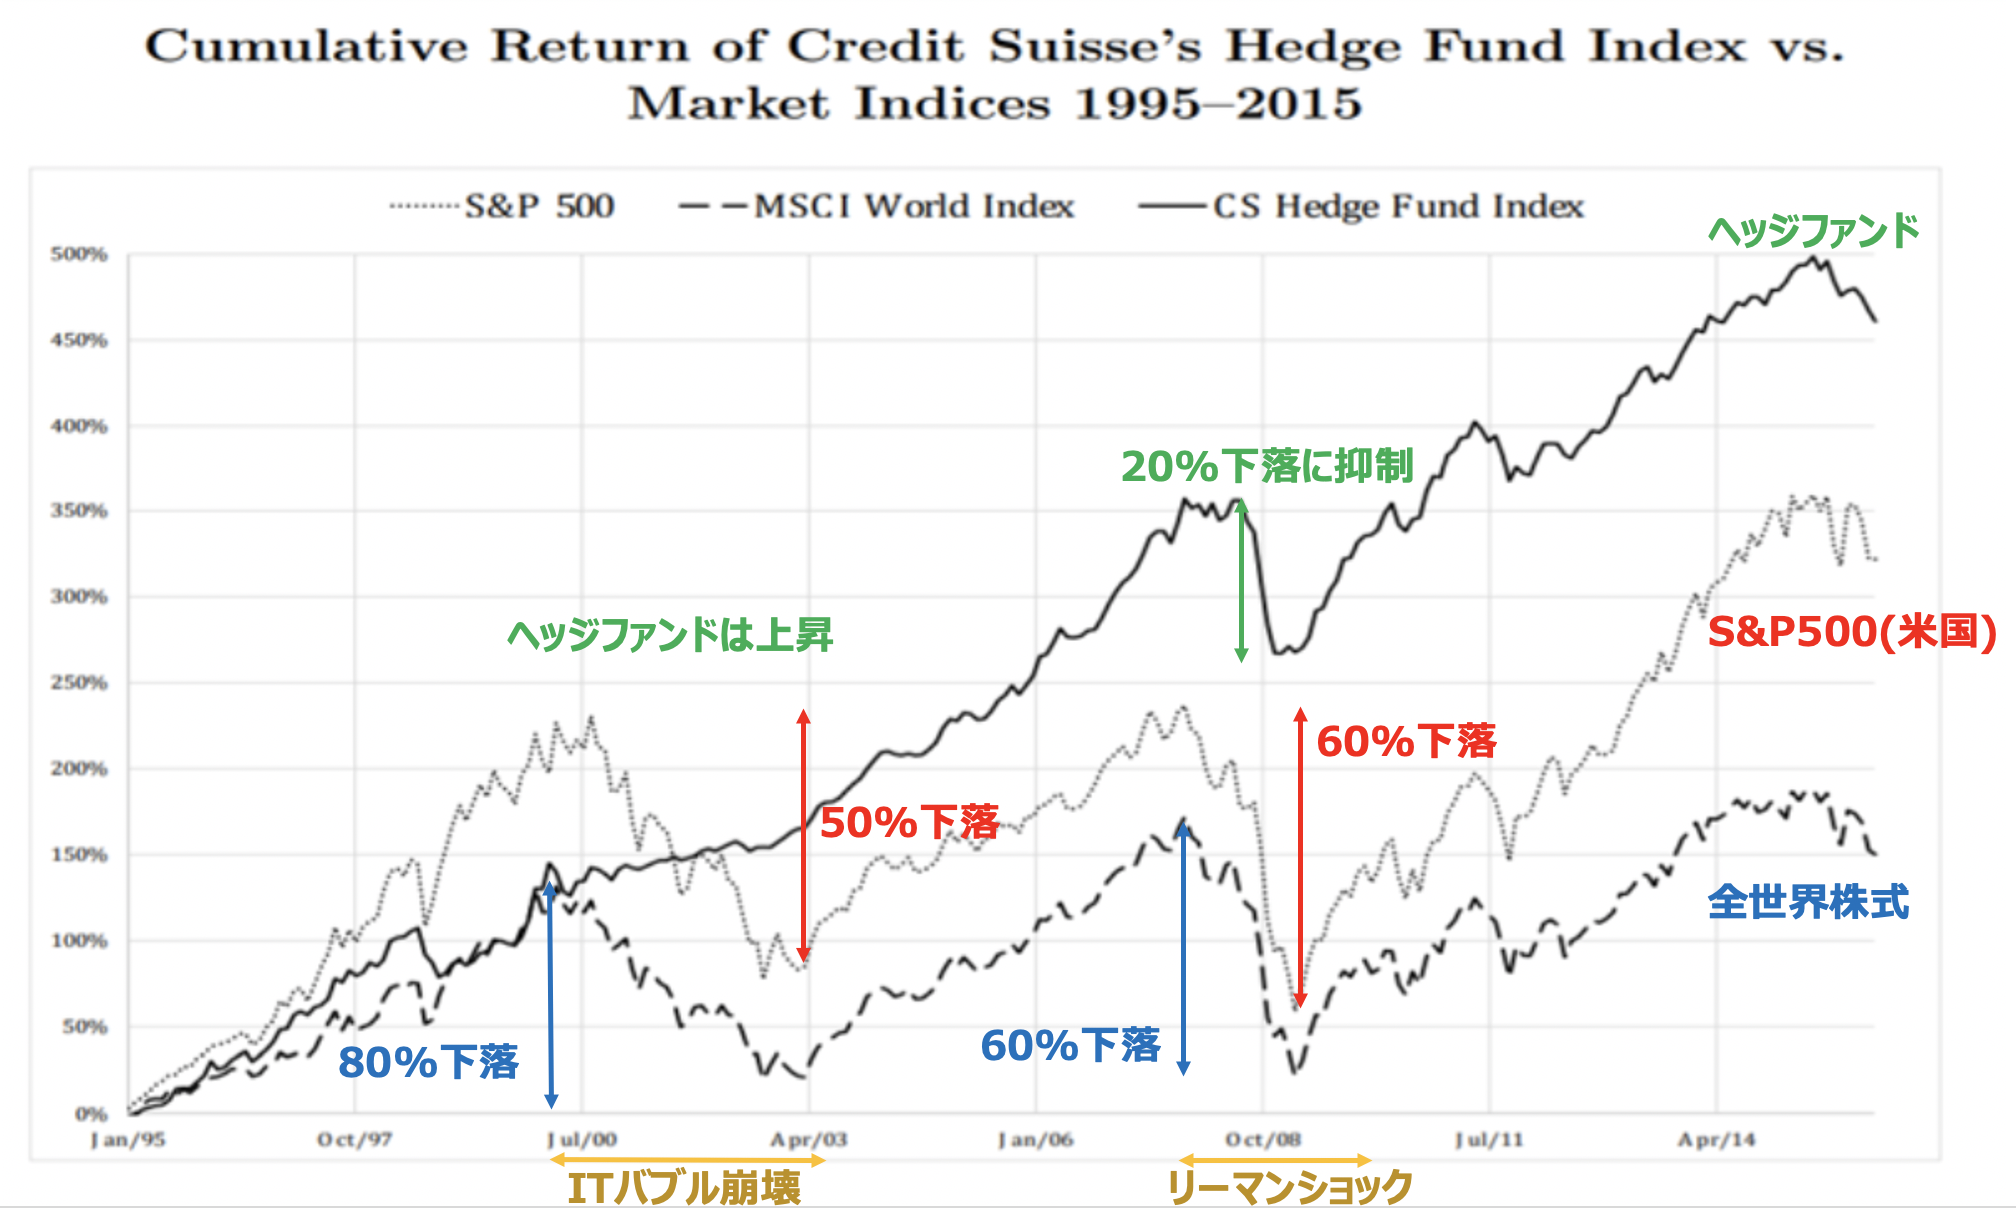 ヘッジファンドは株式市場が下落する局面でもリターンをあげて素晴らしいパフォーマンス